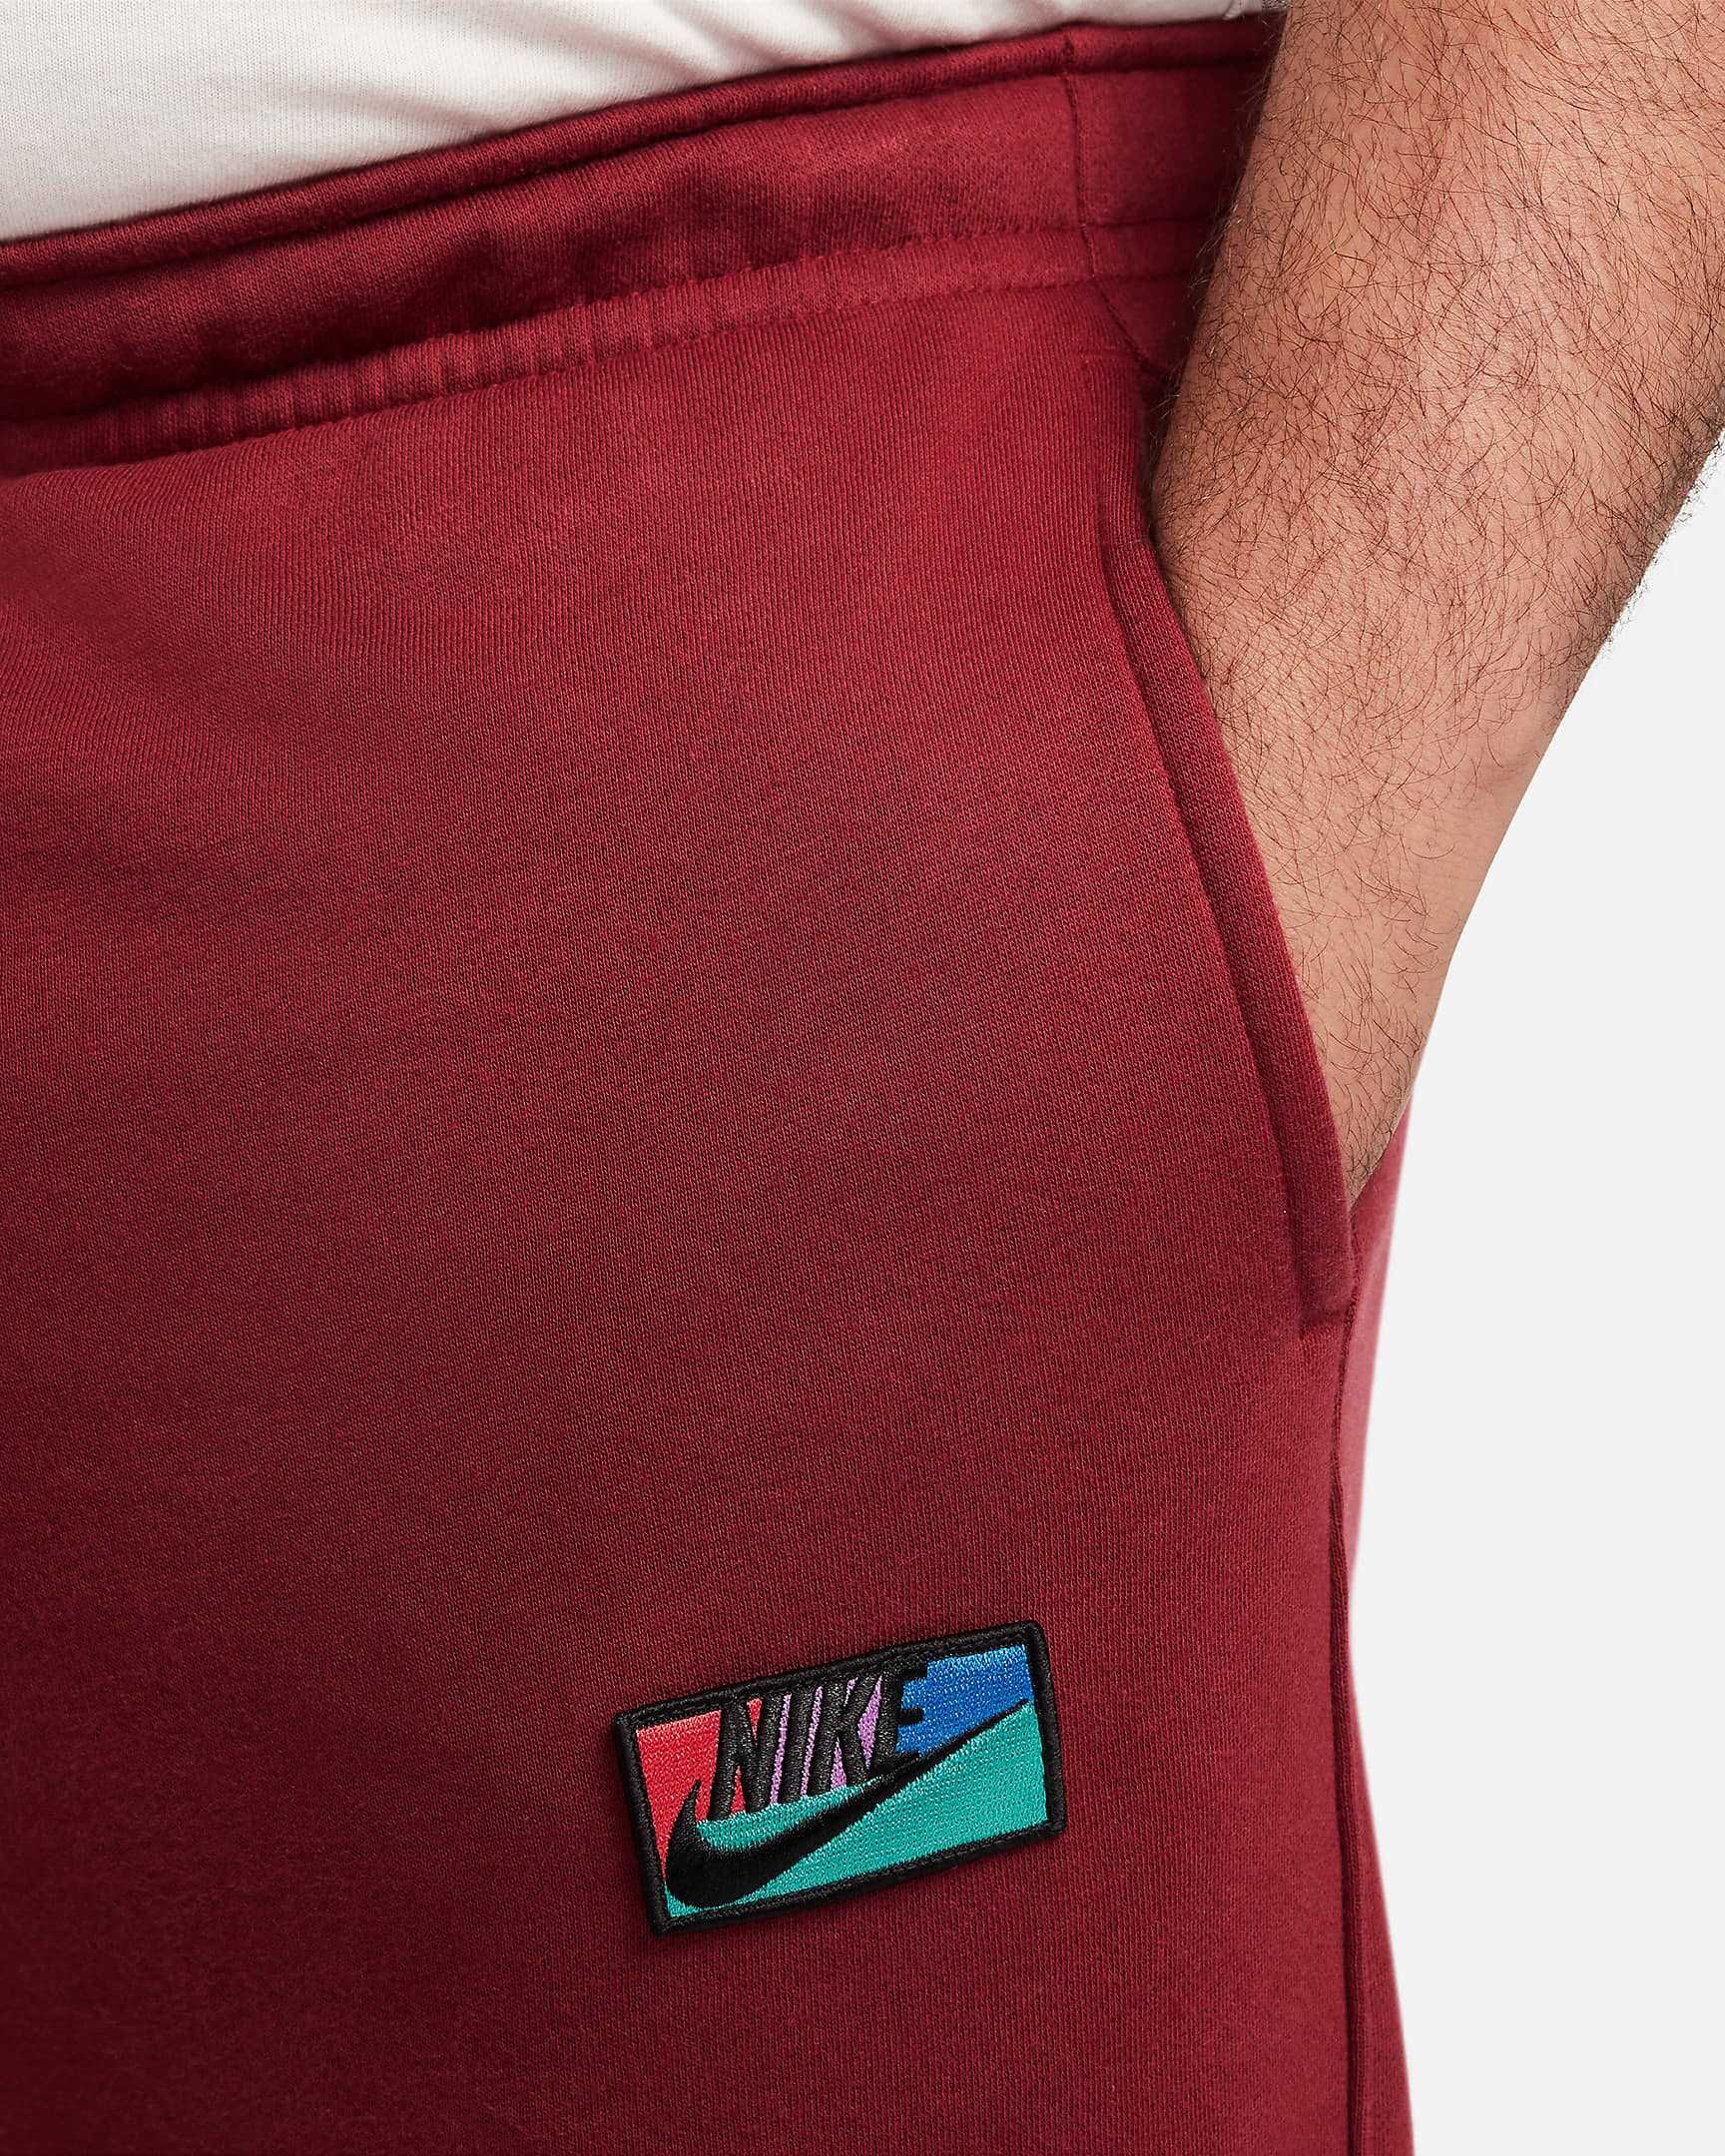 Nike, спортивные штаны джоггеры, флис, р. 50 (L)